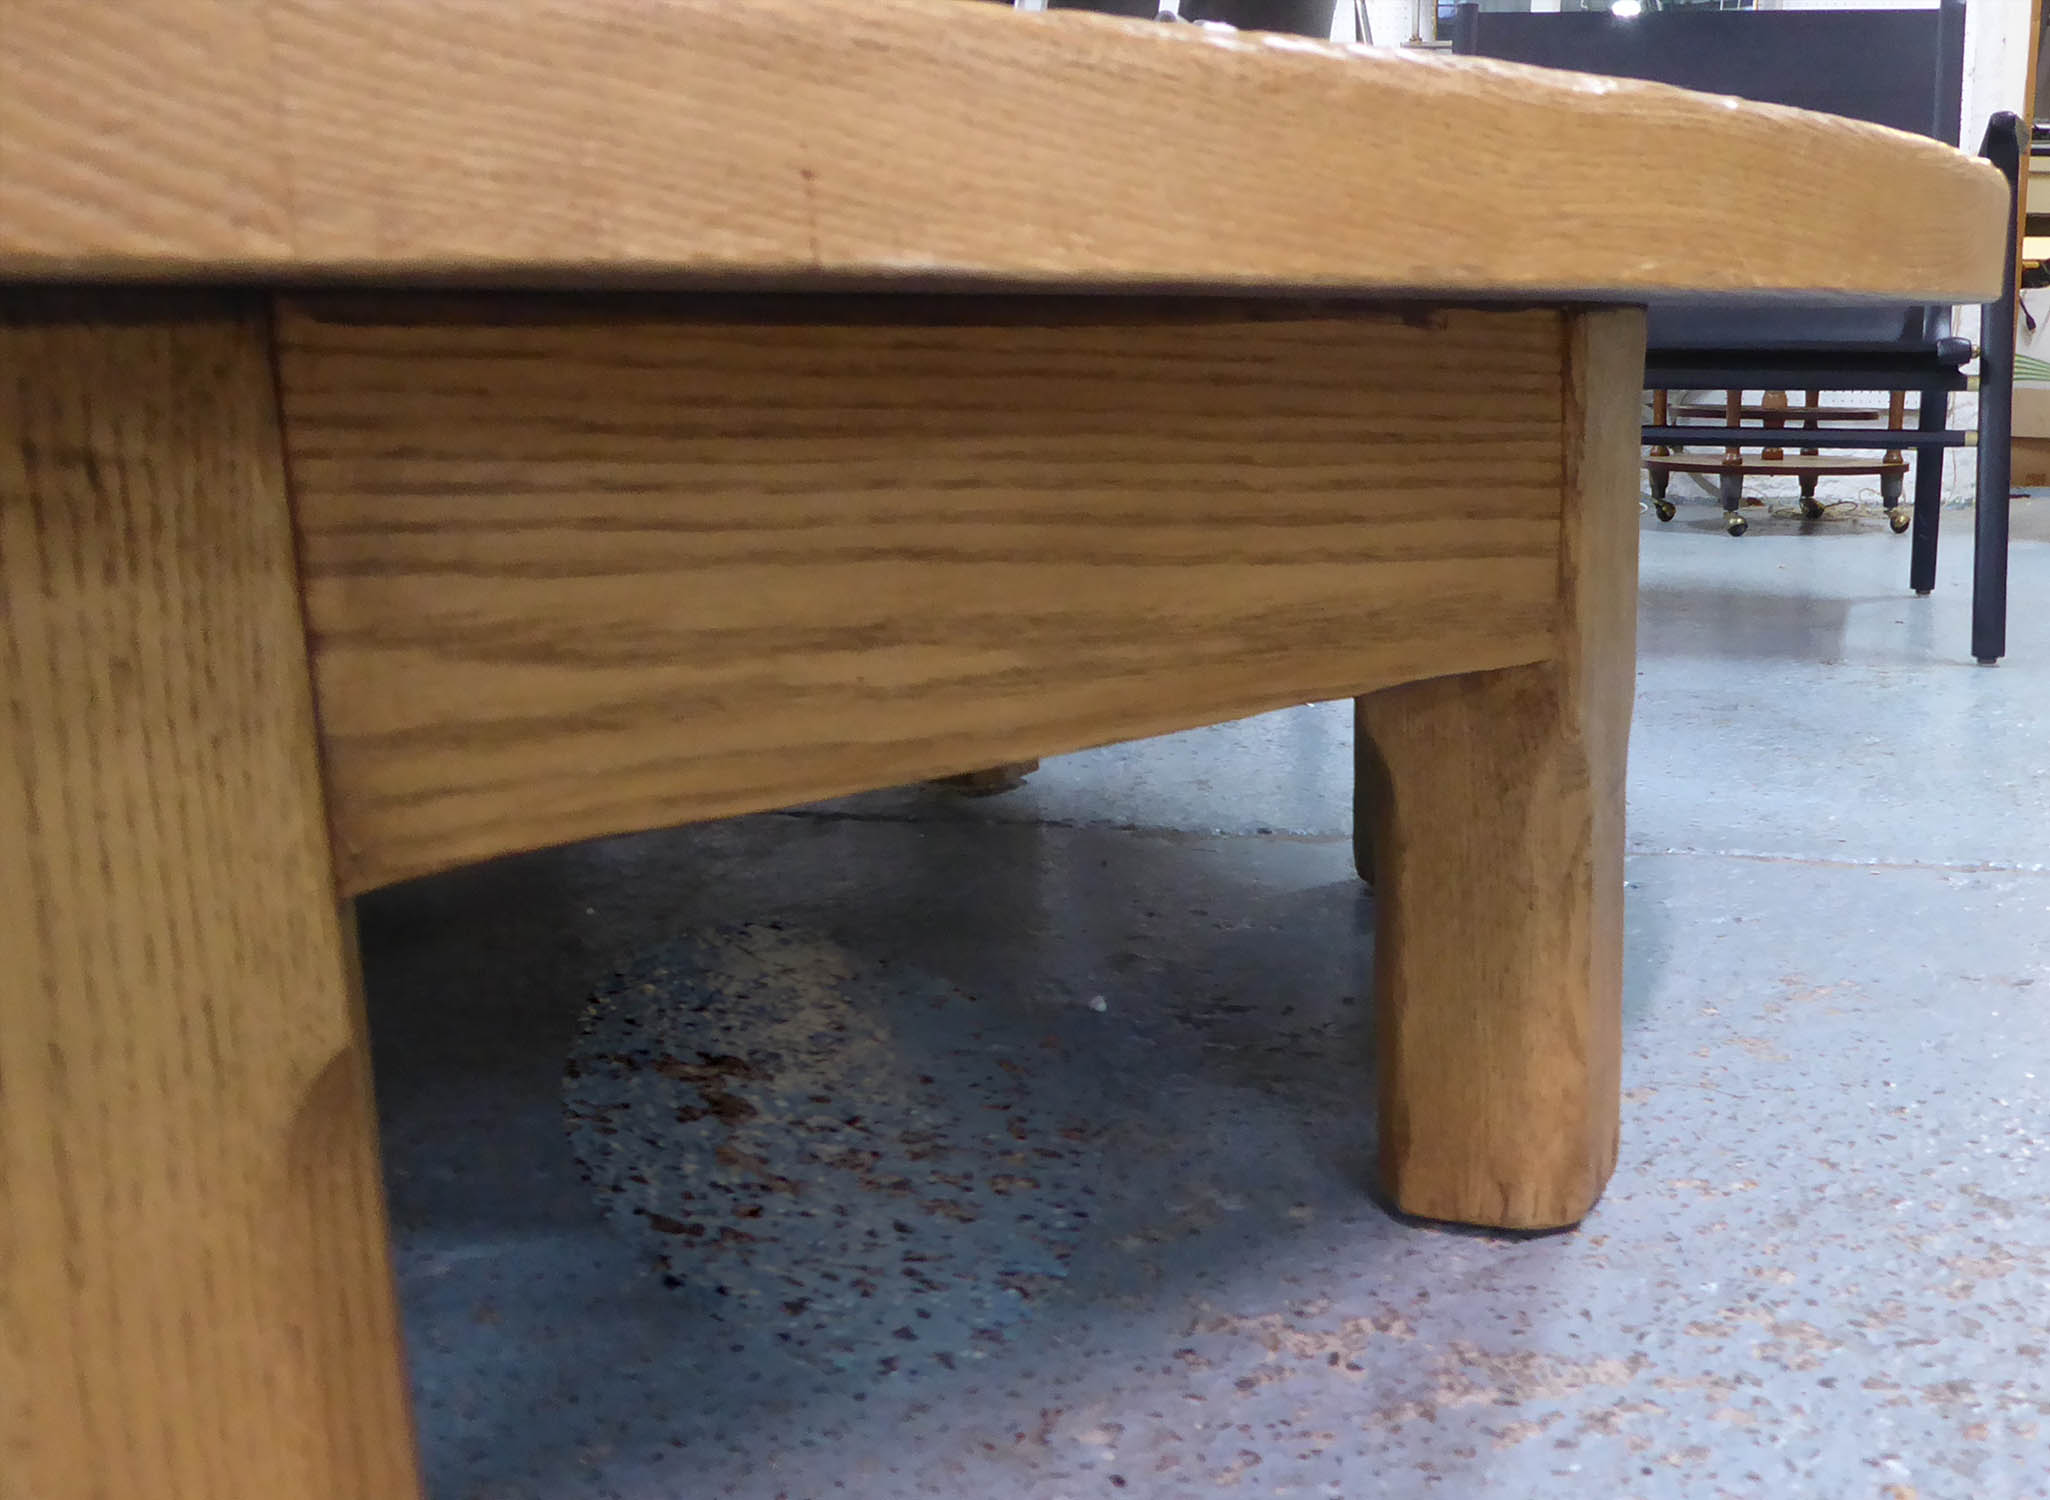 RALPH LAUREN PLATFORM COCKTAIL TABLE, 152cm x 152cm x 38cm. (slight Faults) - Image 4 of 7